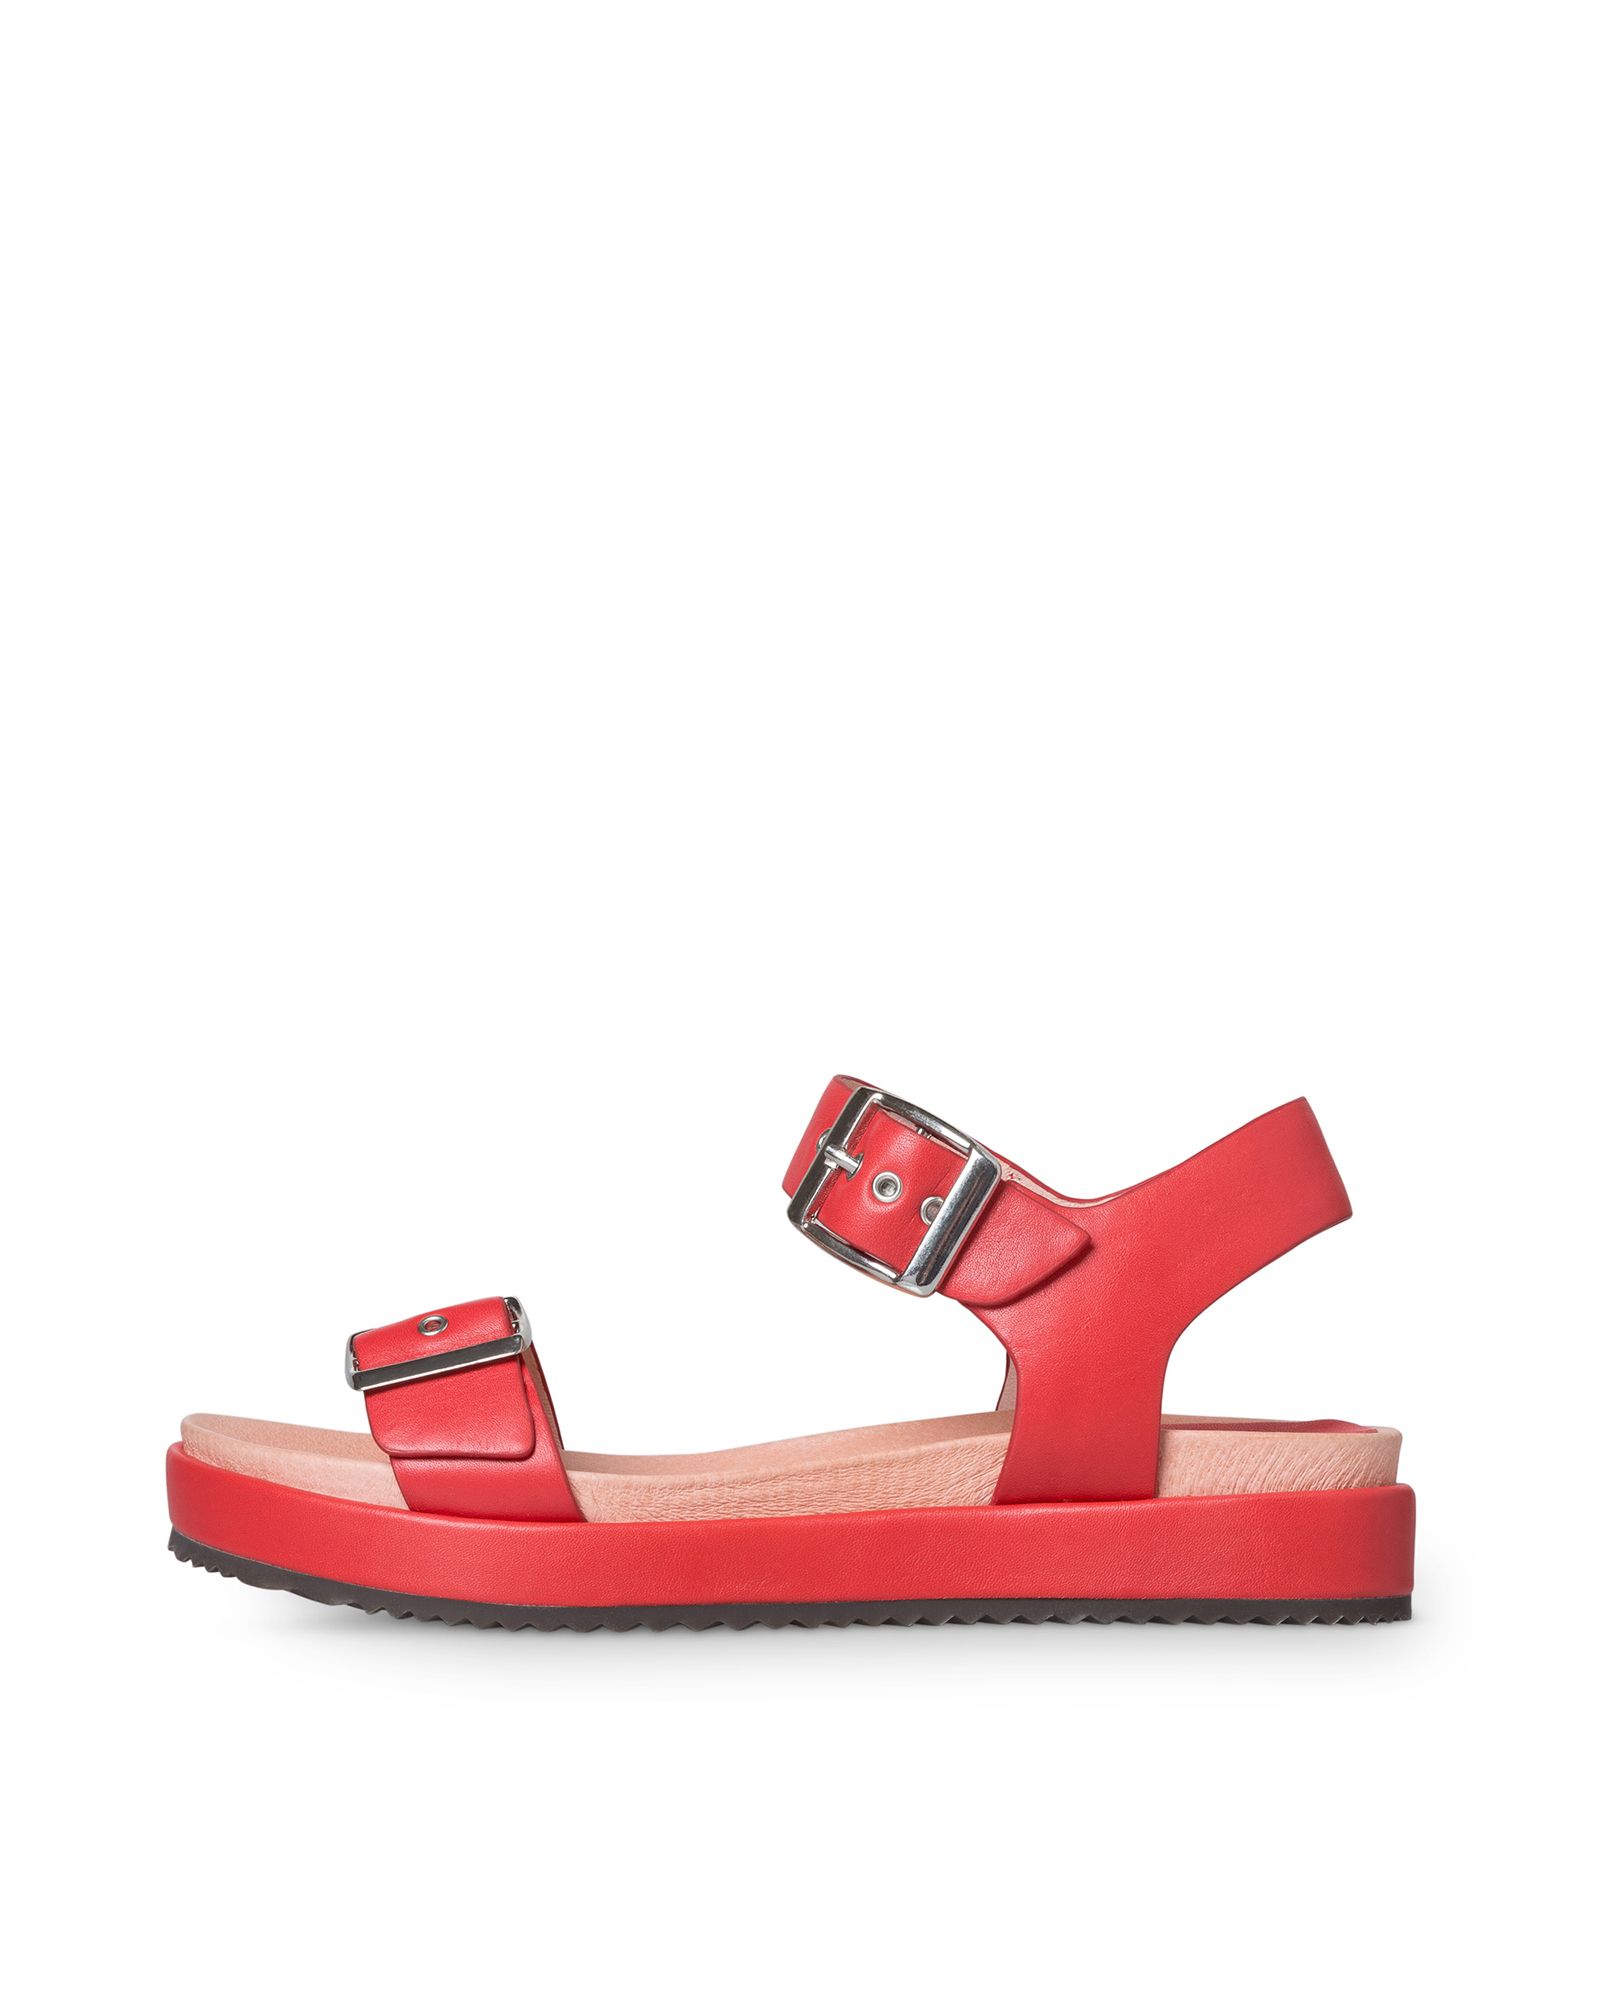 Red Leather Flatform Sandals | Oliver Bonas